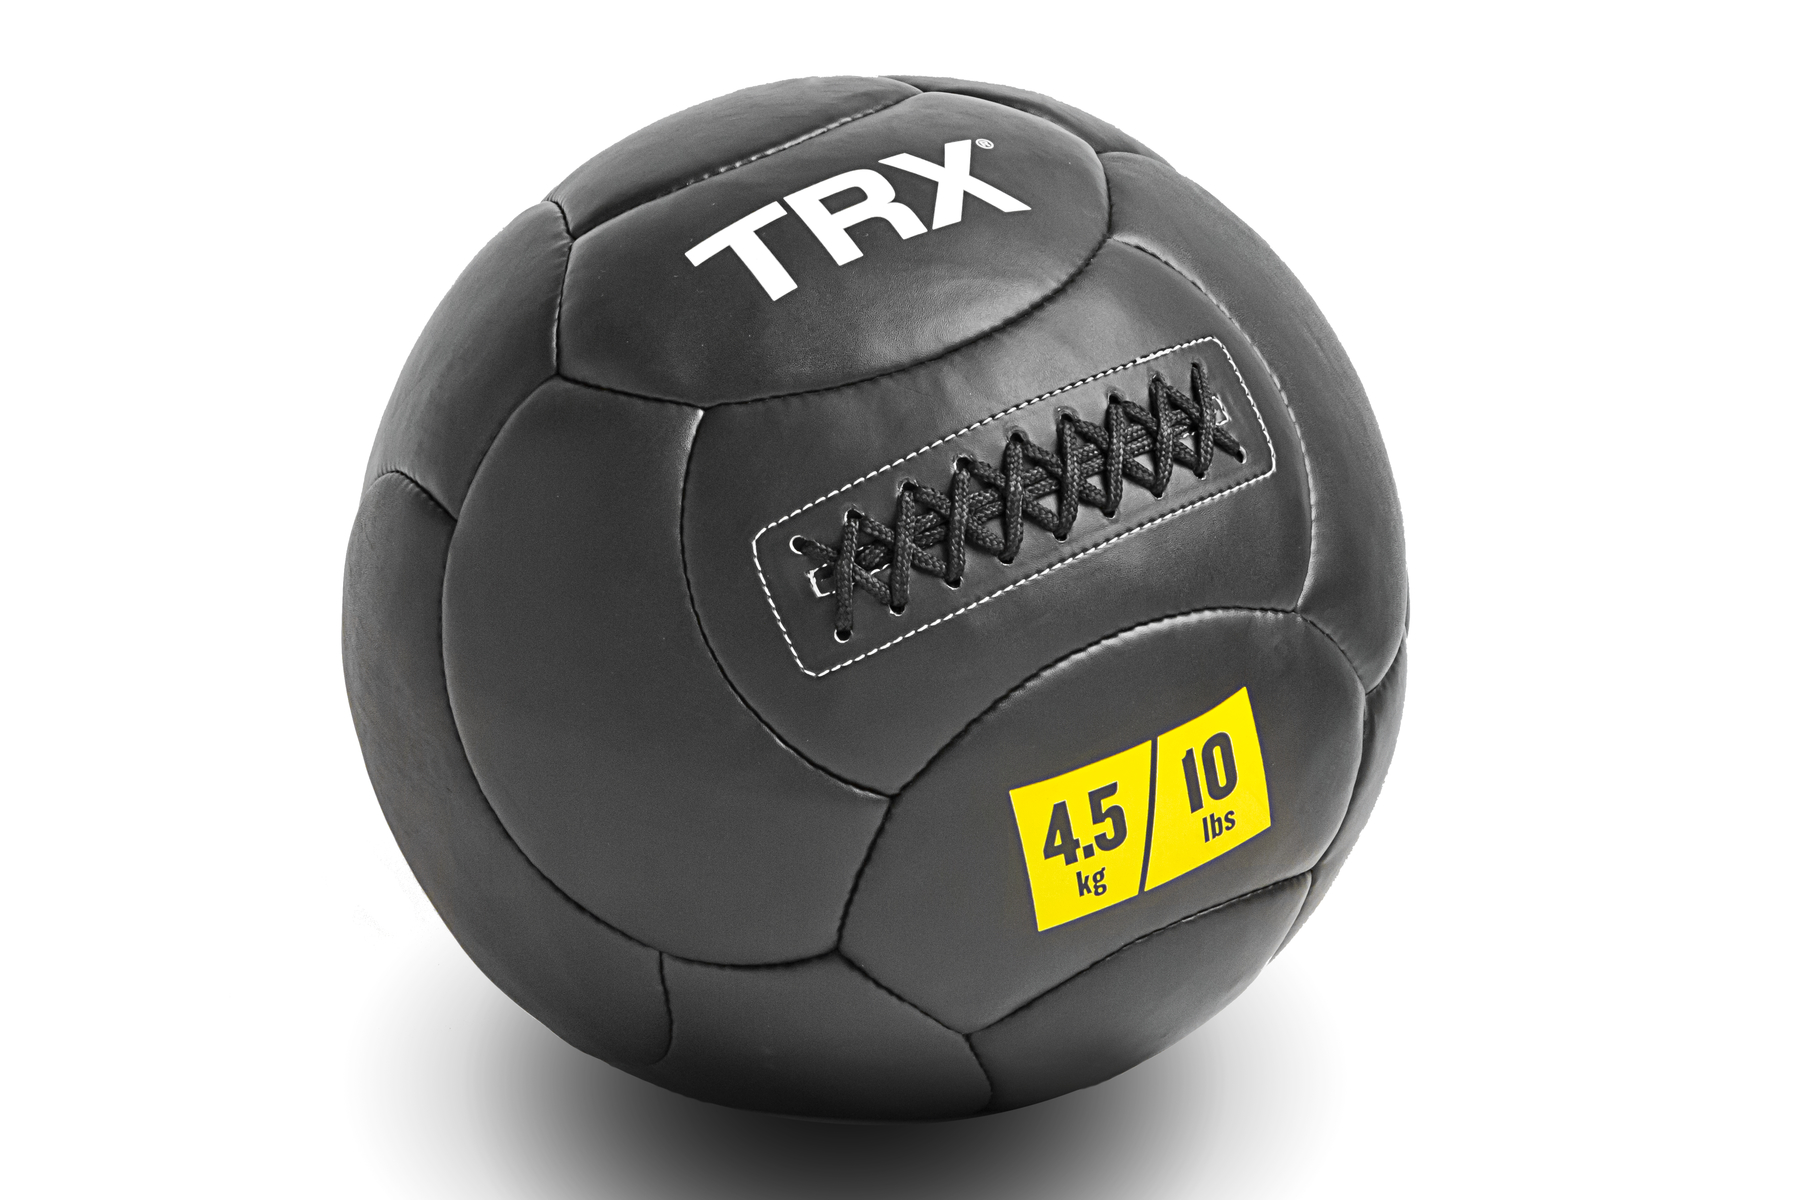 Медицинбол TRX EXMDBL-14-6, черный, 2,72 кг